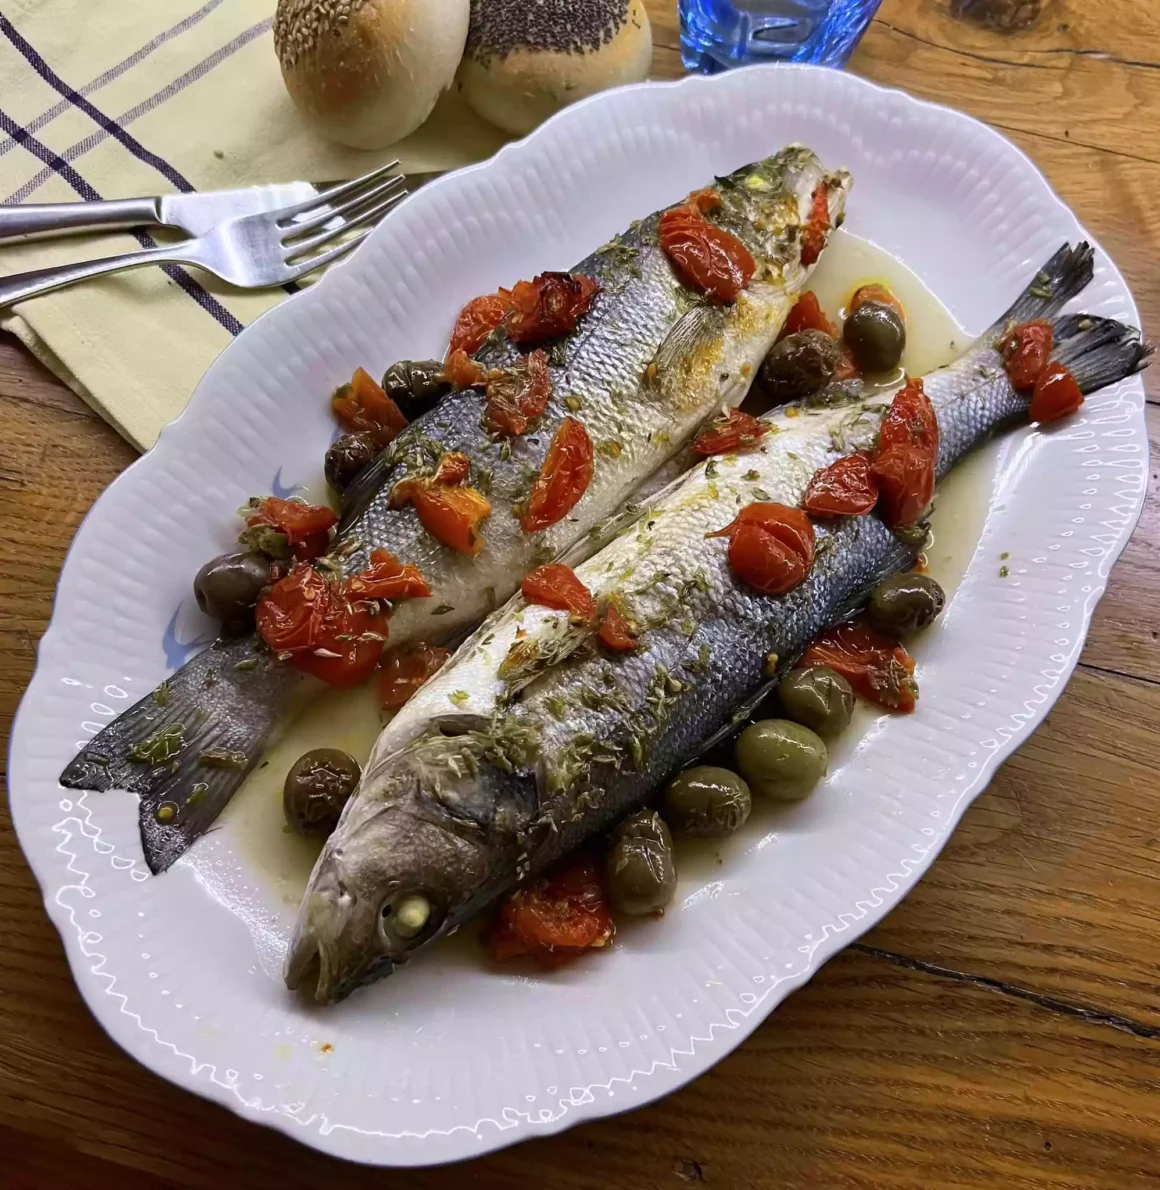 “Mangiare con gli Occhi”: In Cucina con Tina Radicchio – Branzini alla mediterranea al forno